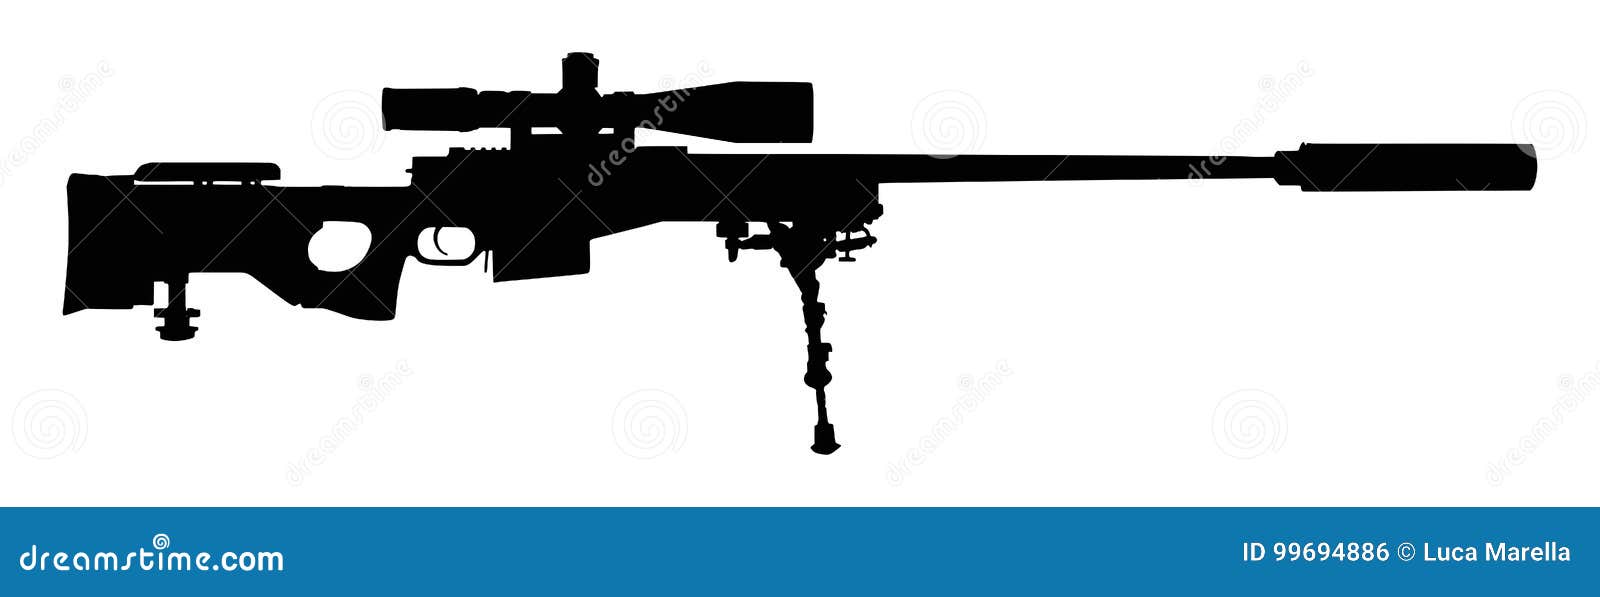 sniper rifle silhouette